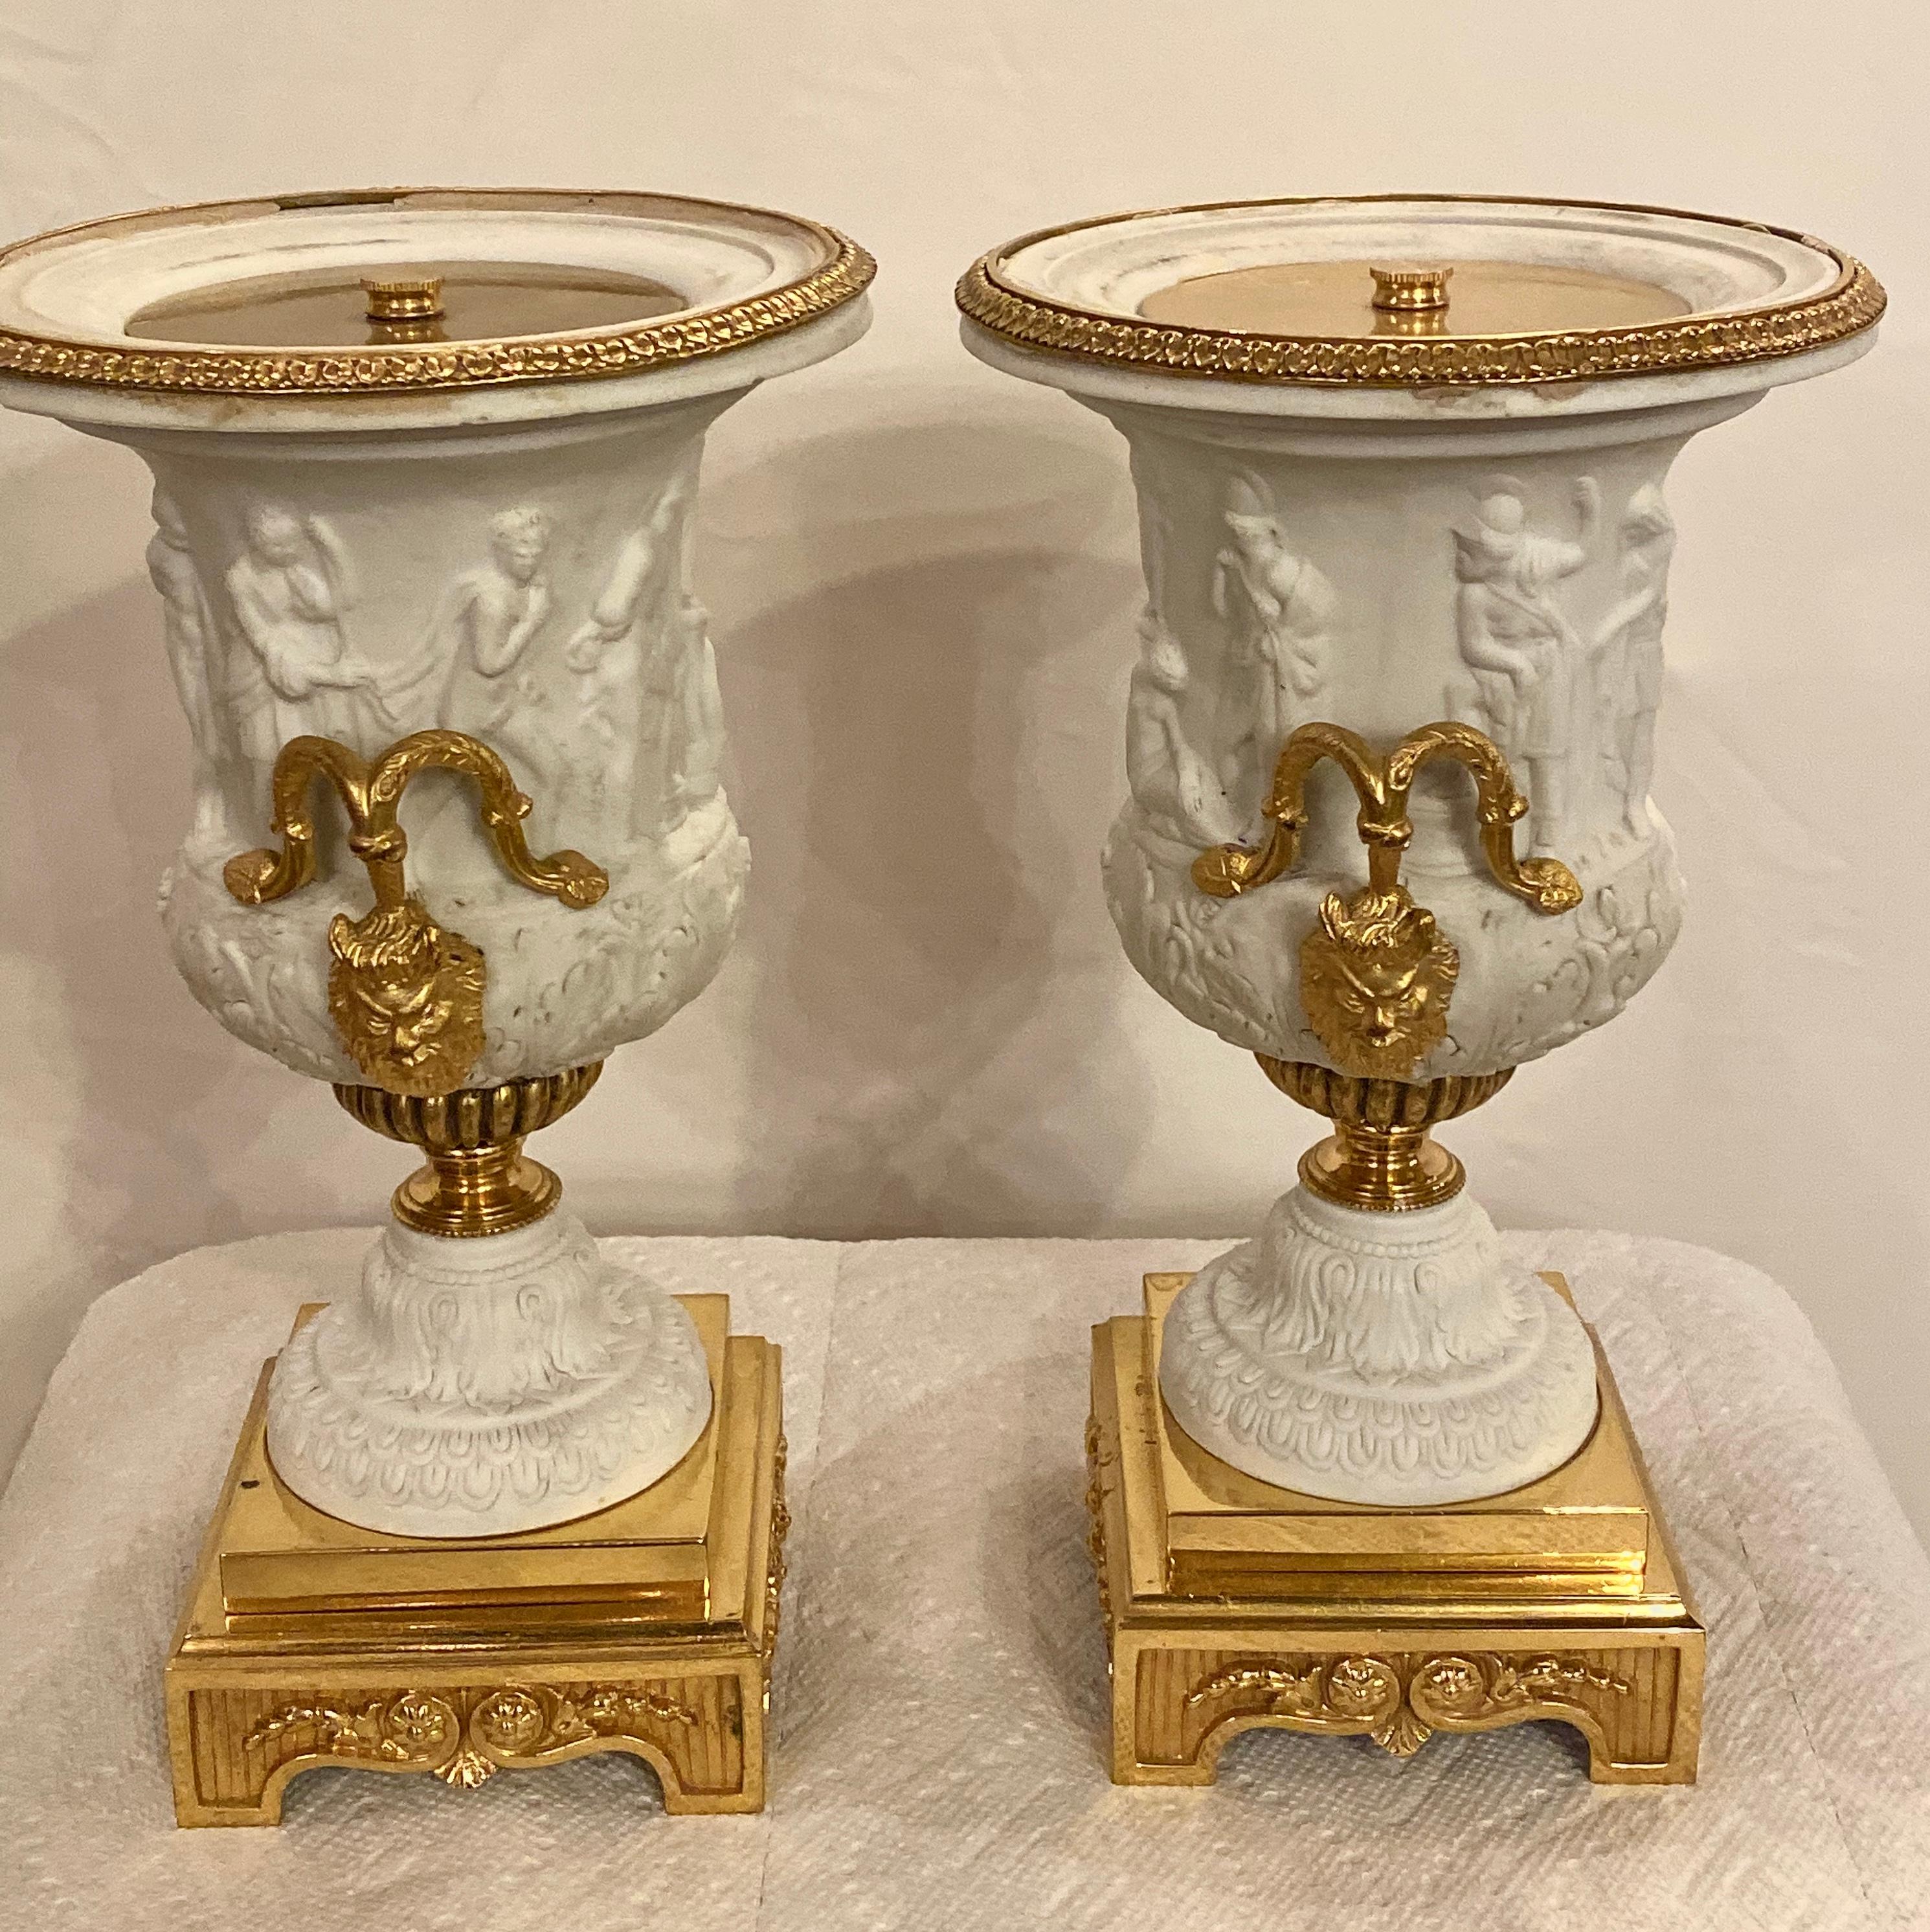 Neoklassizistisches Paar Sèvres Urnen oder Vasen aus Parian und Doré-Bronze um 1920. Dieses spektakuläre Paar Tischvasen hat einen Sockel aus Doré-Bronze, der eine fein gegossene, gestempelte Vase im griechischen Sèvres-Stil trägt, auf der